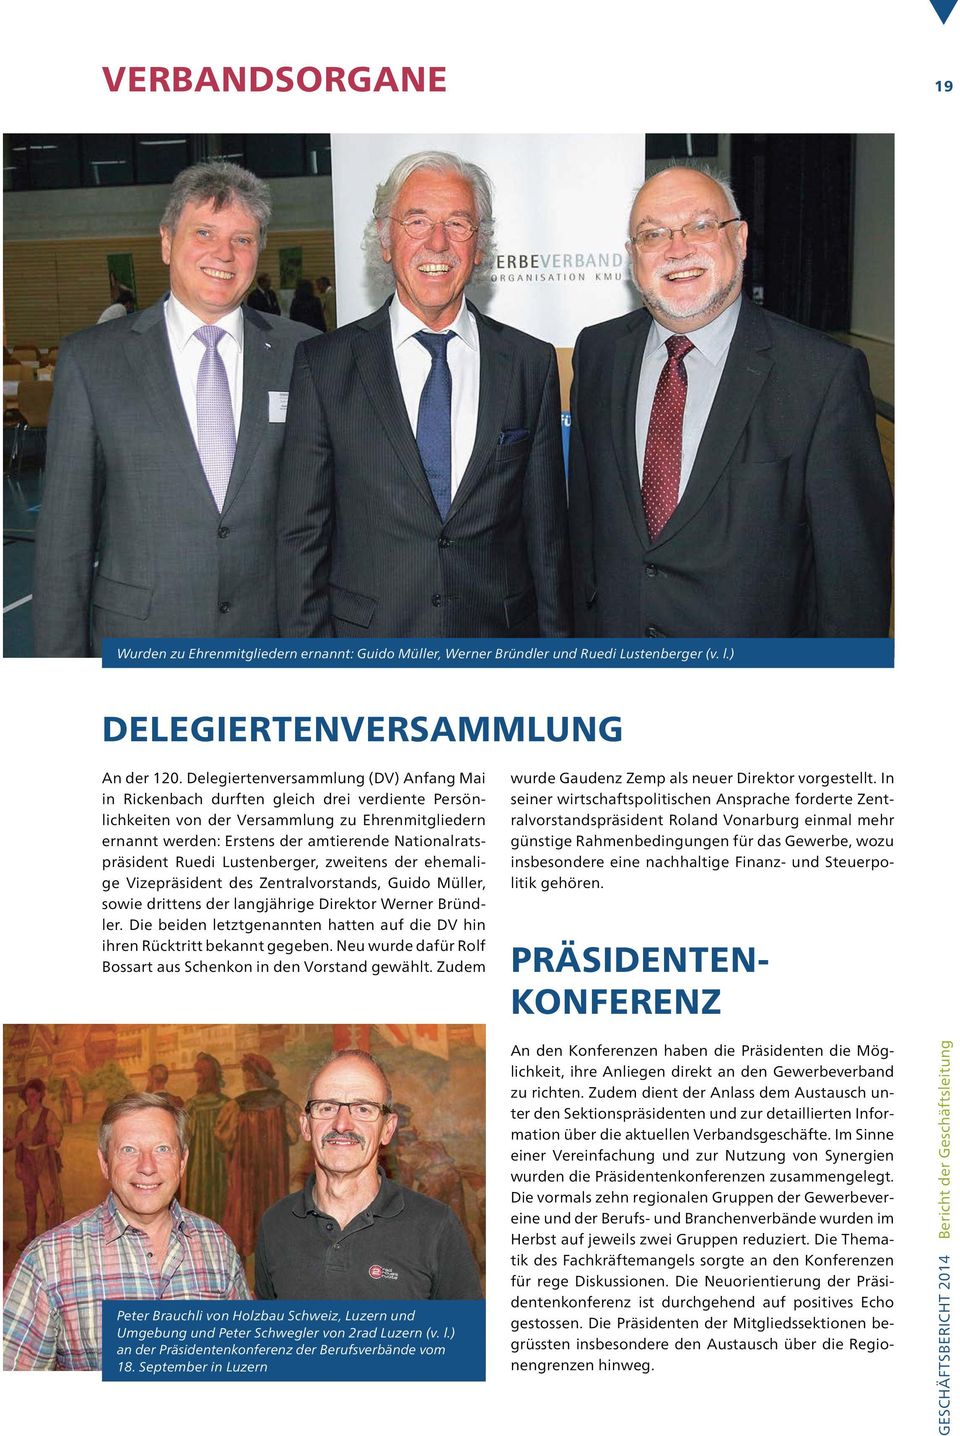 Nationalratspräsident Ruedi Lustenberger, zweitens der ehemalige Vizepräsident des Zentralvorstands, Guido Müller, sowie drittens der langjährige Direktor Werner Bründler.